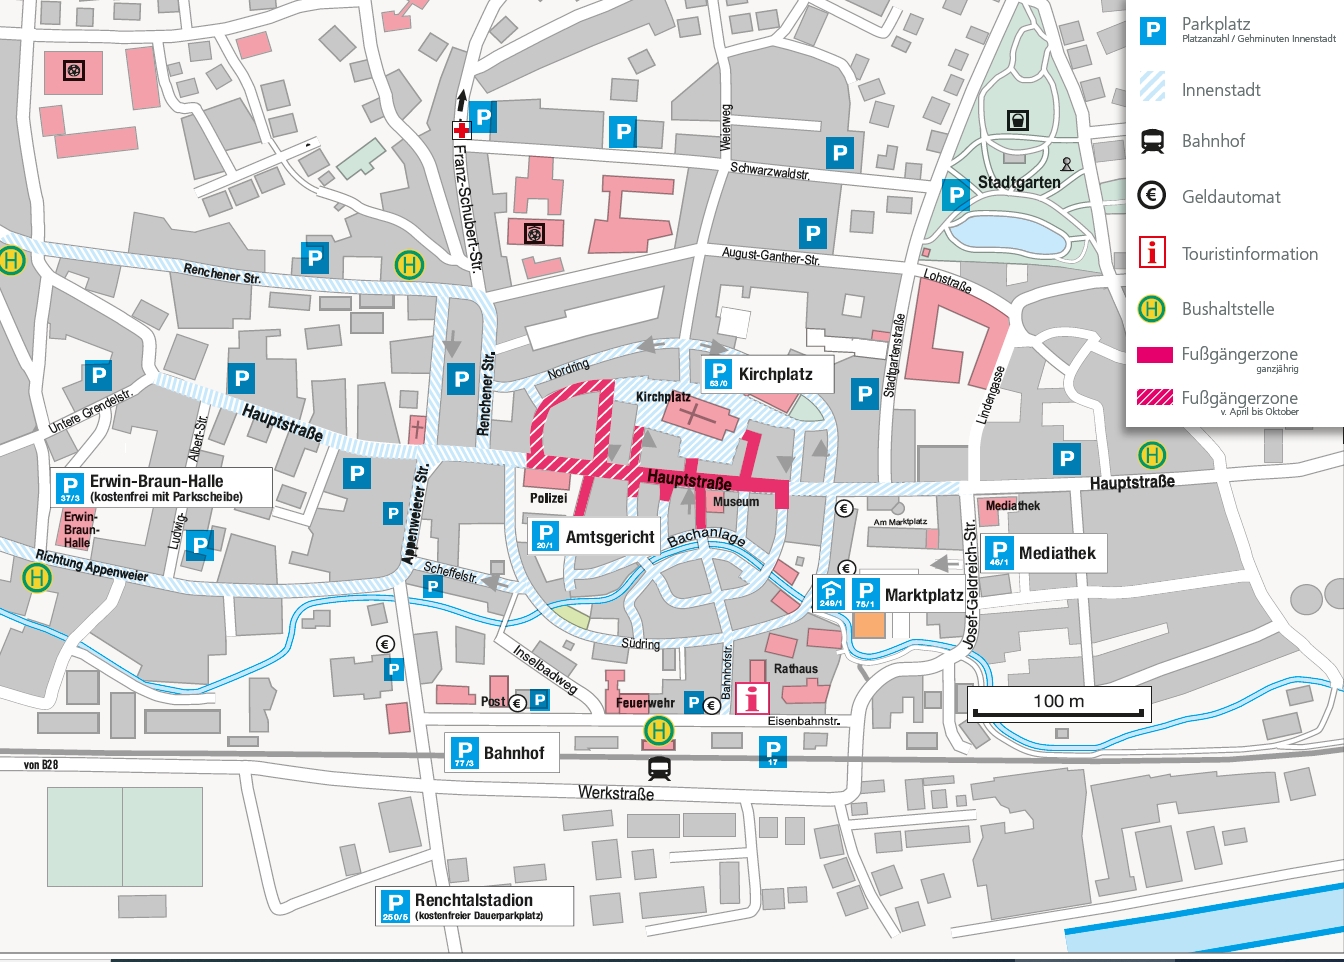 Das Bild zeigt einen Plan der Innenstadt mit eingezeichneten Parkmöglichkeiten